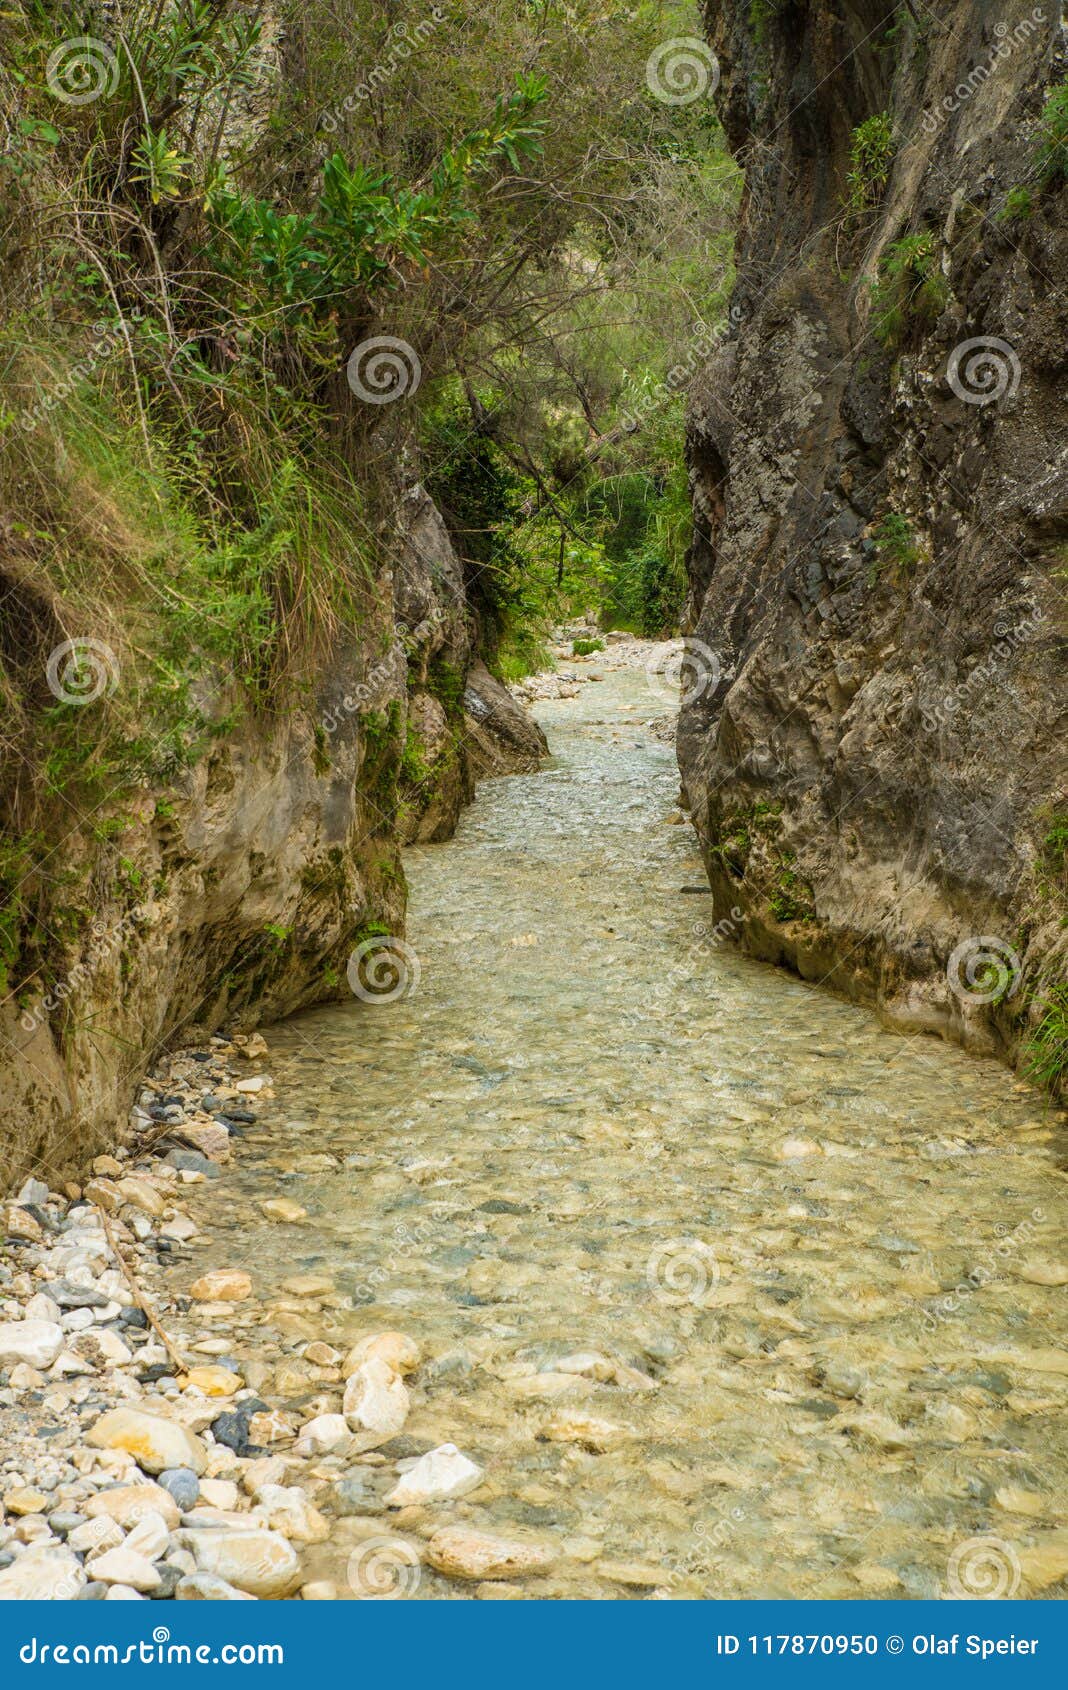 gritar river gorge